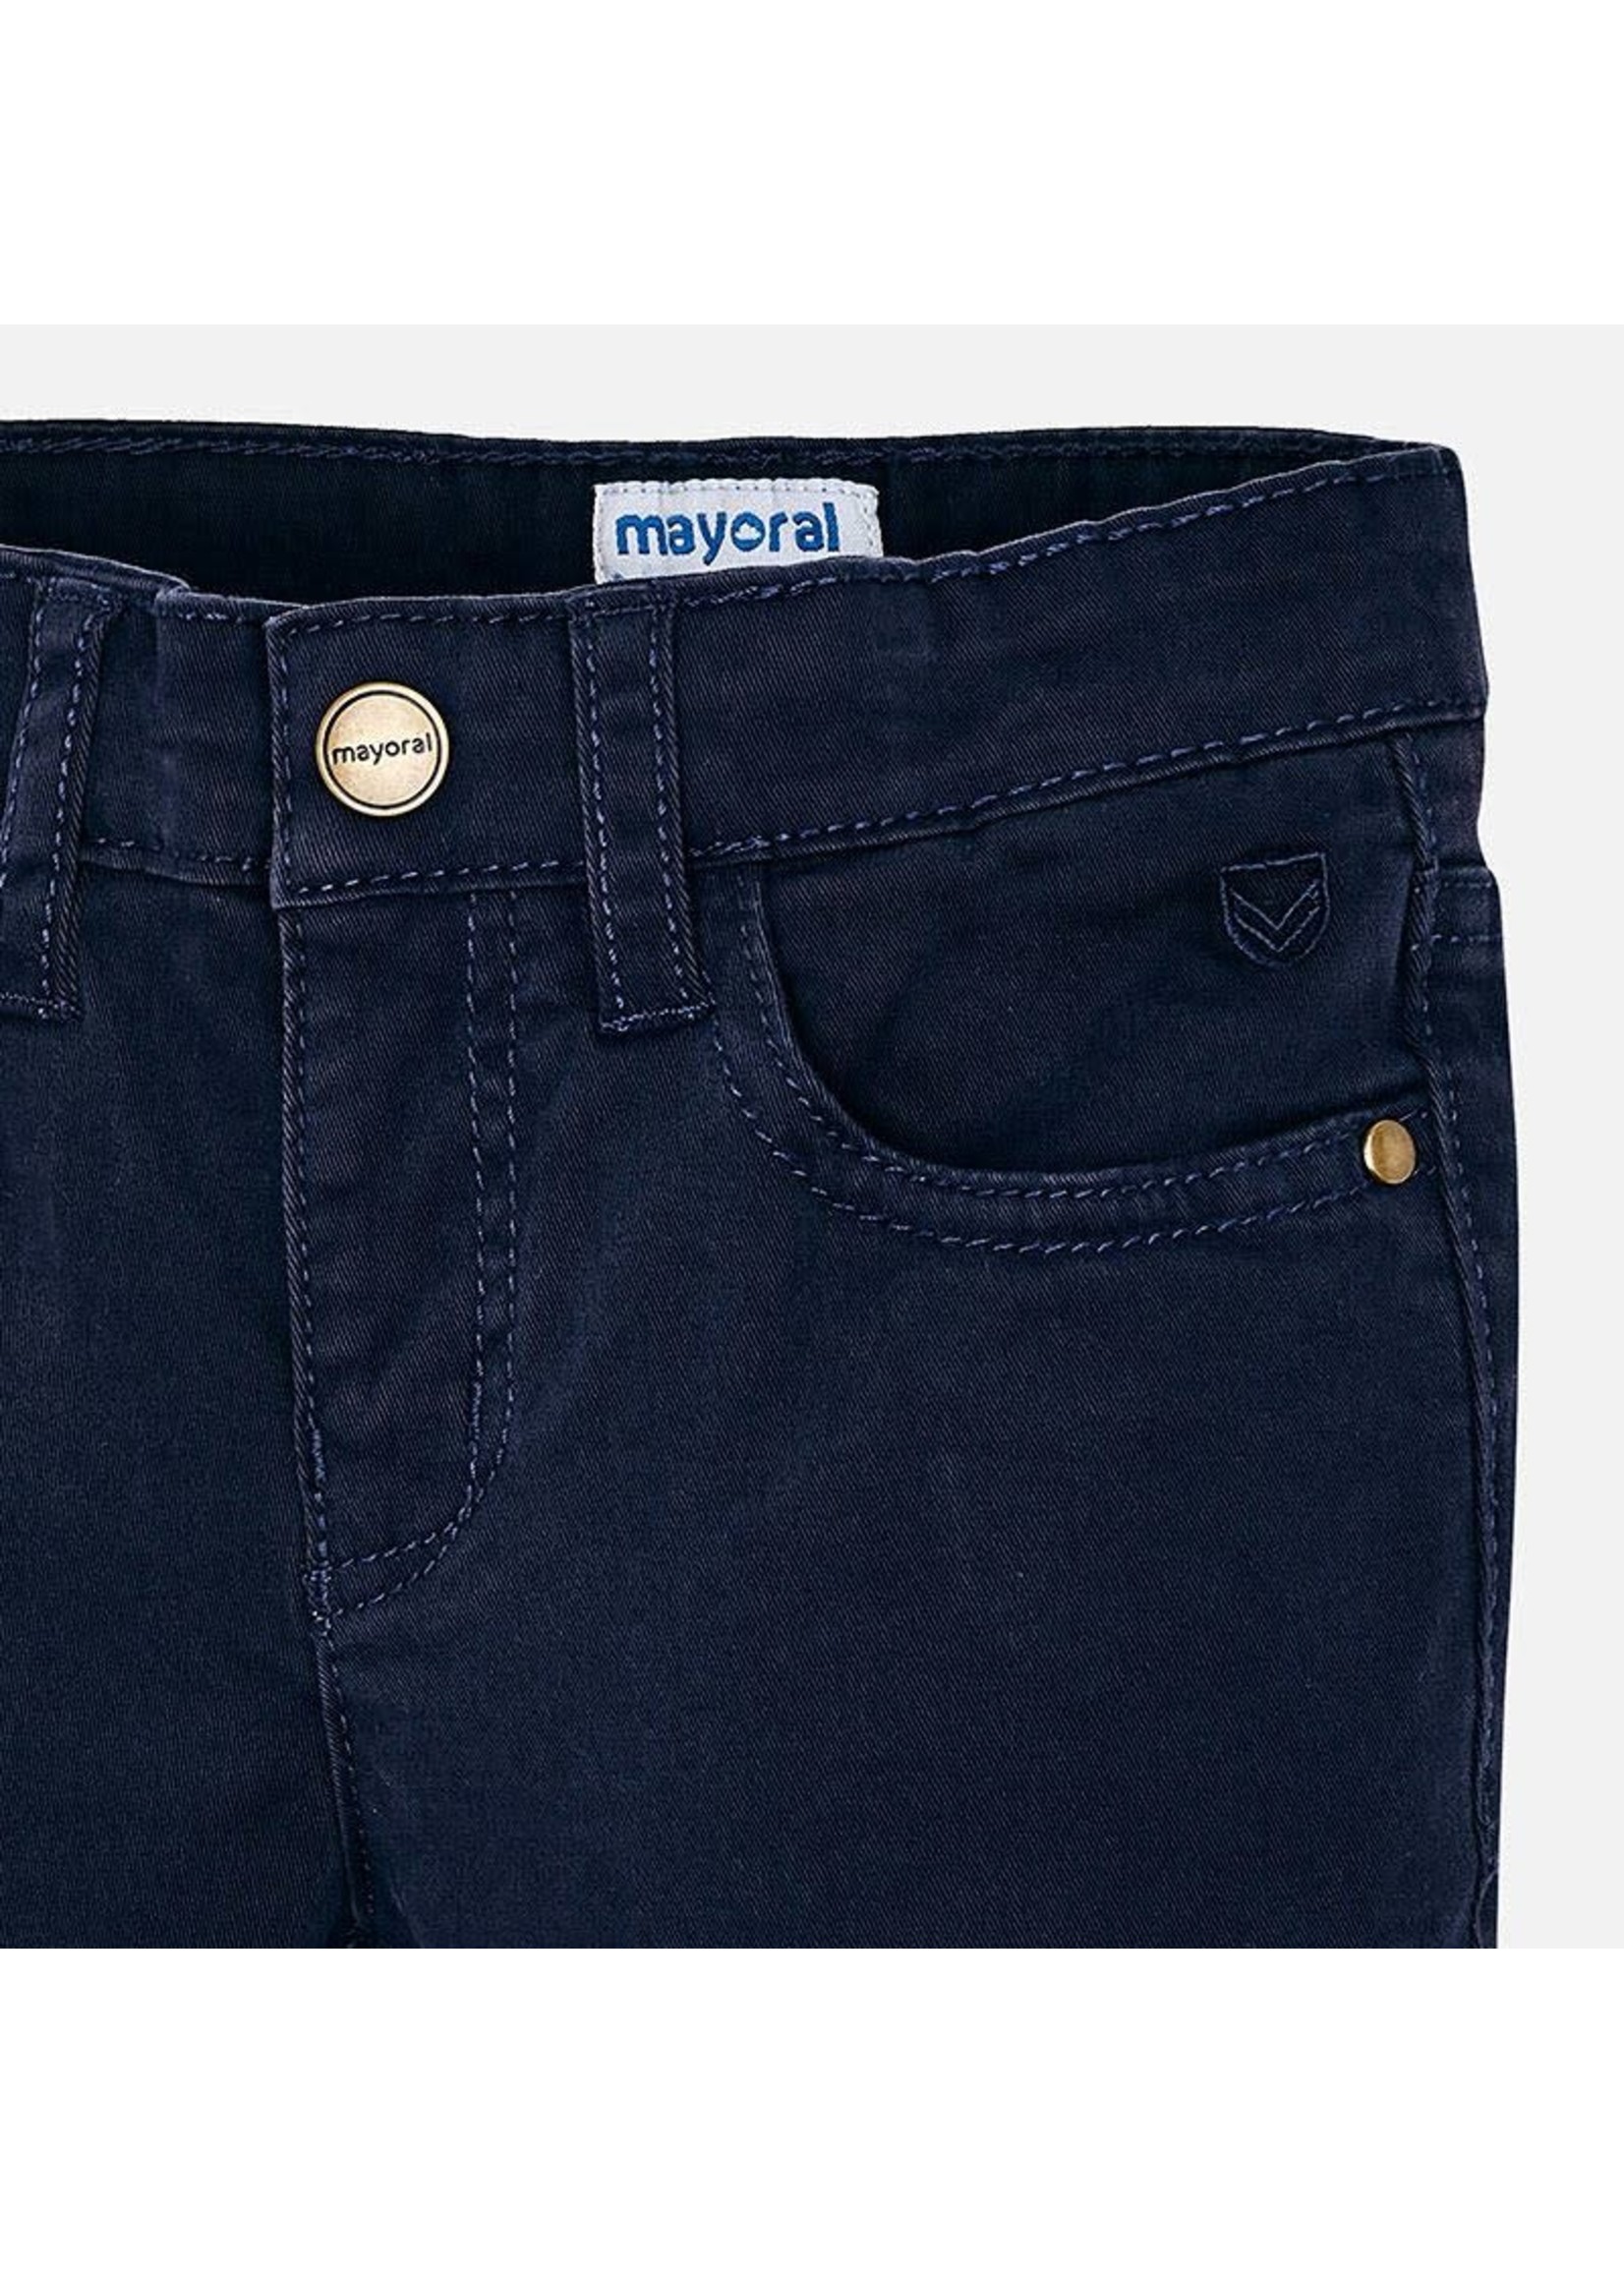 Mayoral Mayoral 5 pocket regular fit pants Navy - 00041